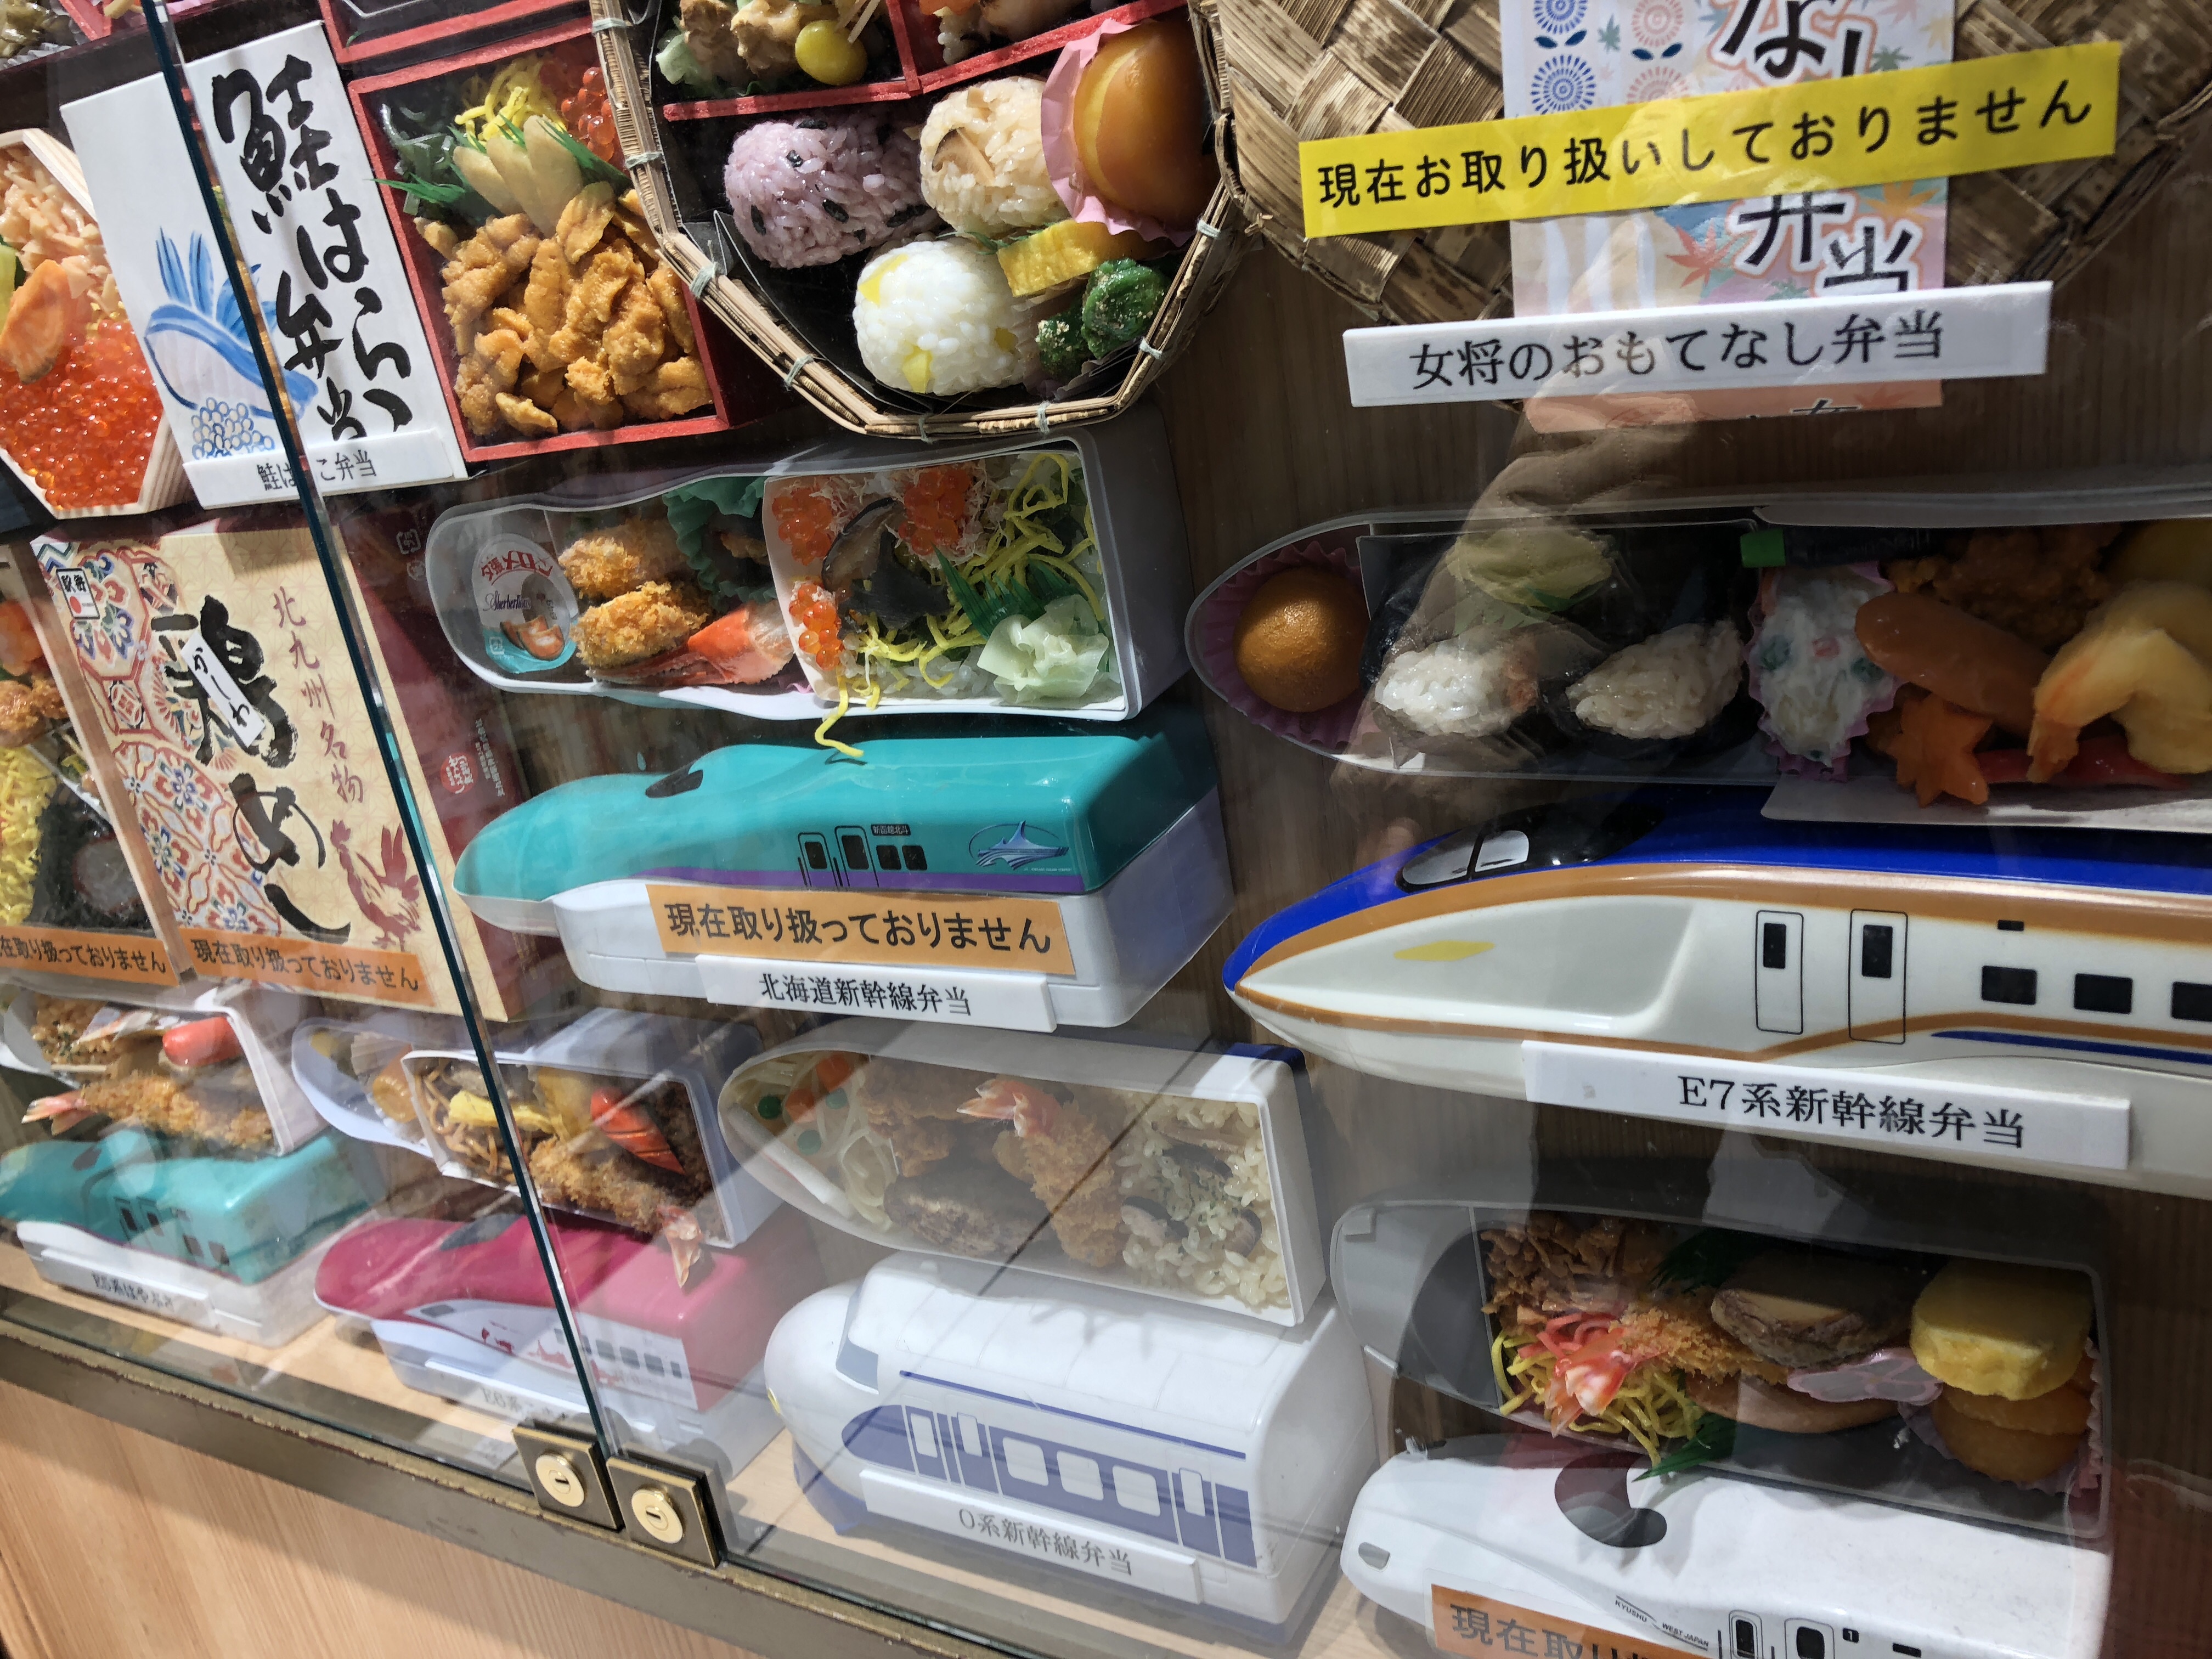 駅弁屋 祭 東京駅には新幹線のお弁当やキャラ弁がいっぱい 1 5人目育児 我が家の双子